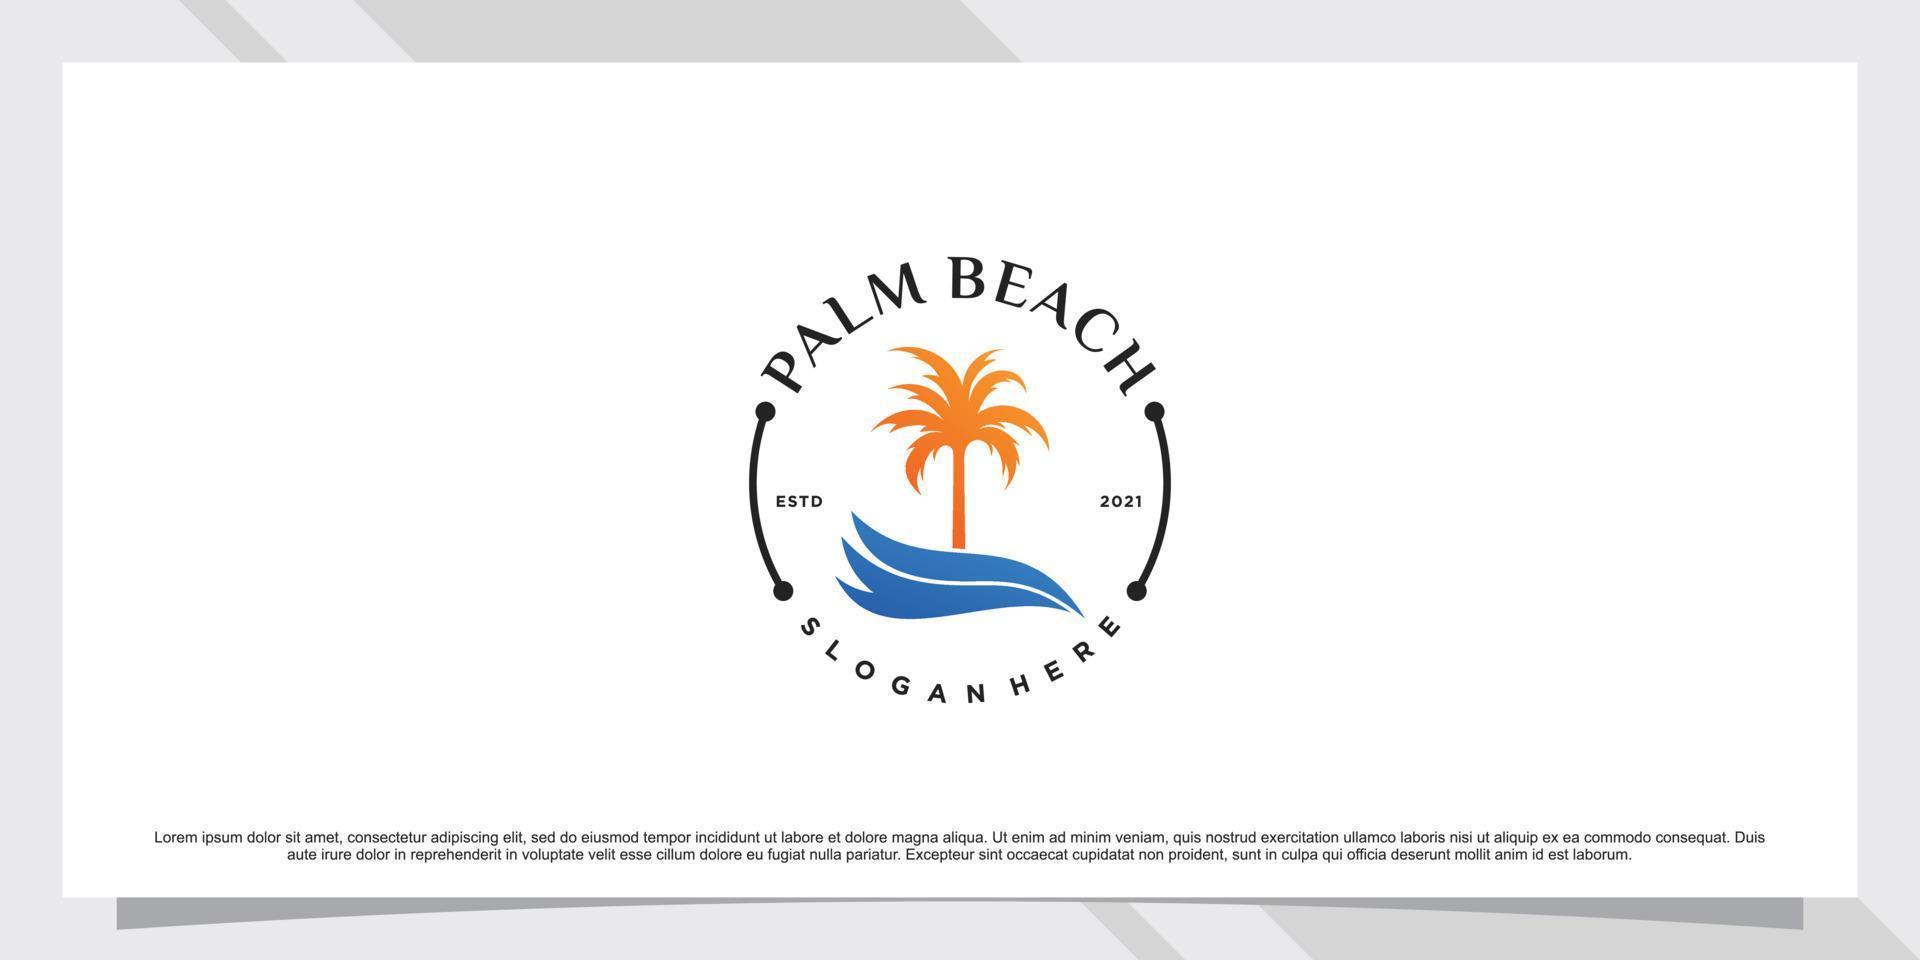 ispirazione per il design del logo della palma e della spiaggia con il vettore premium del sole e dell'elemento creativo